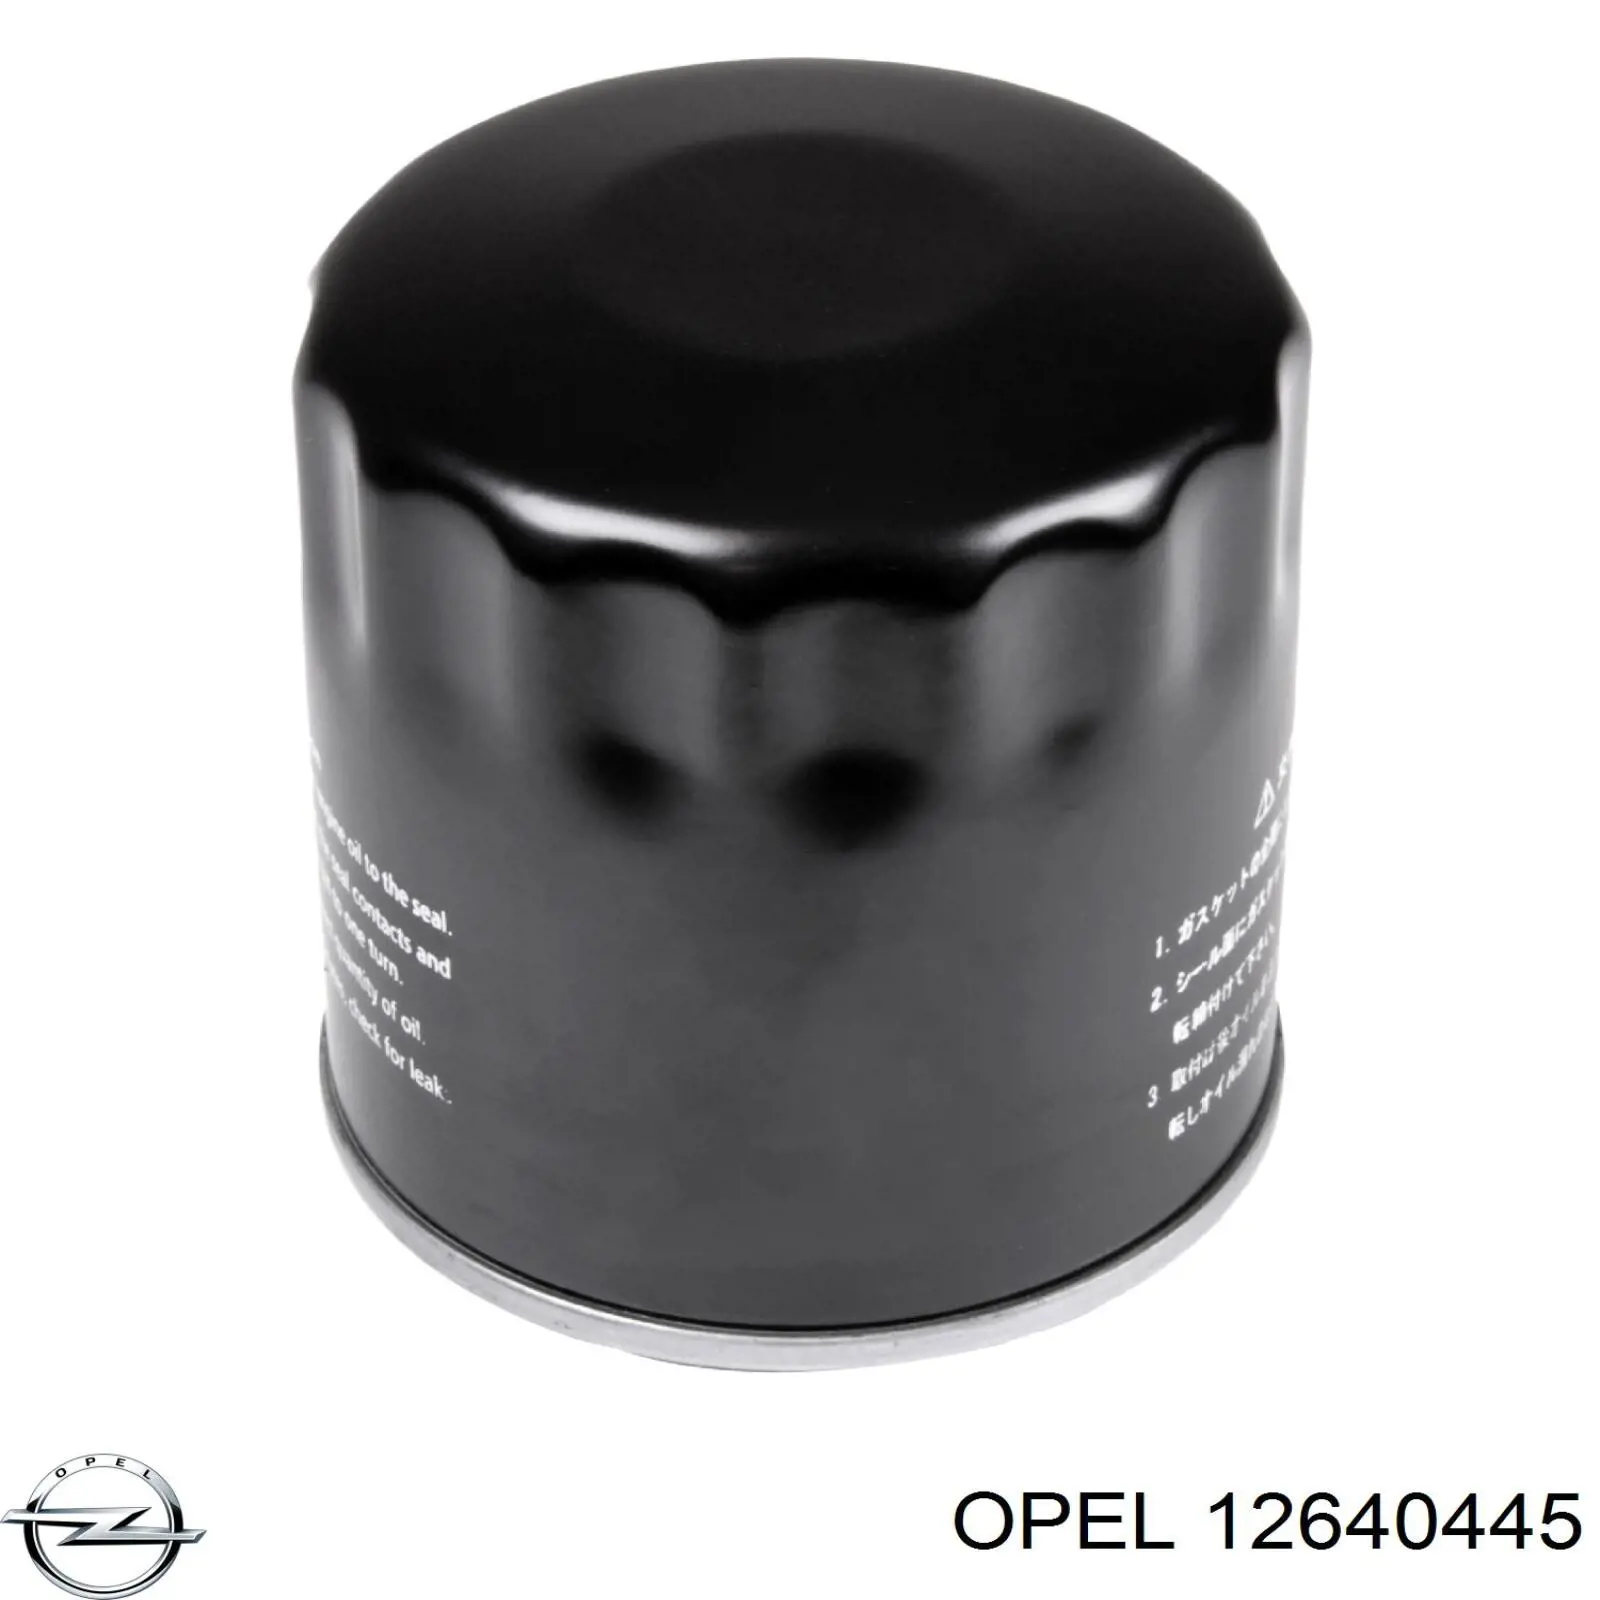 12640445 Opel масляный фильтр